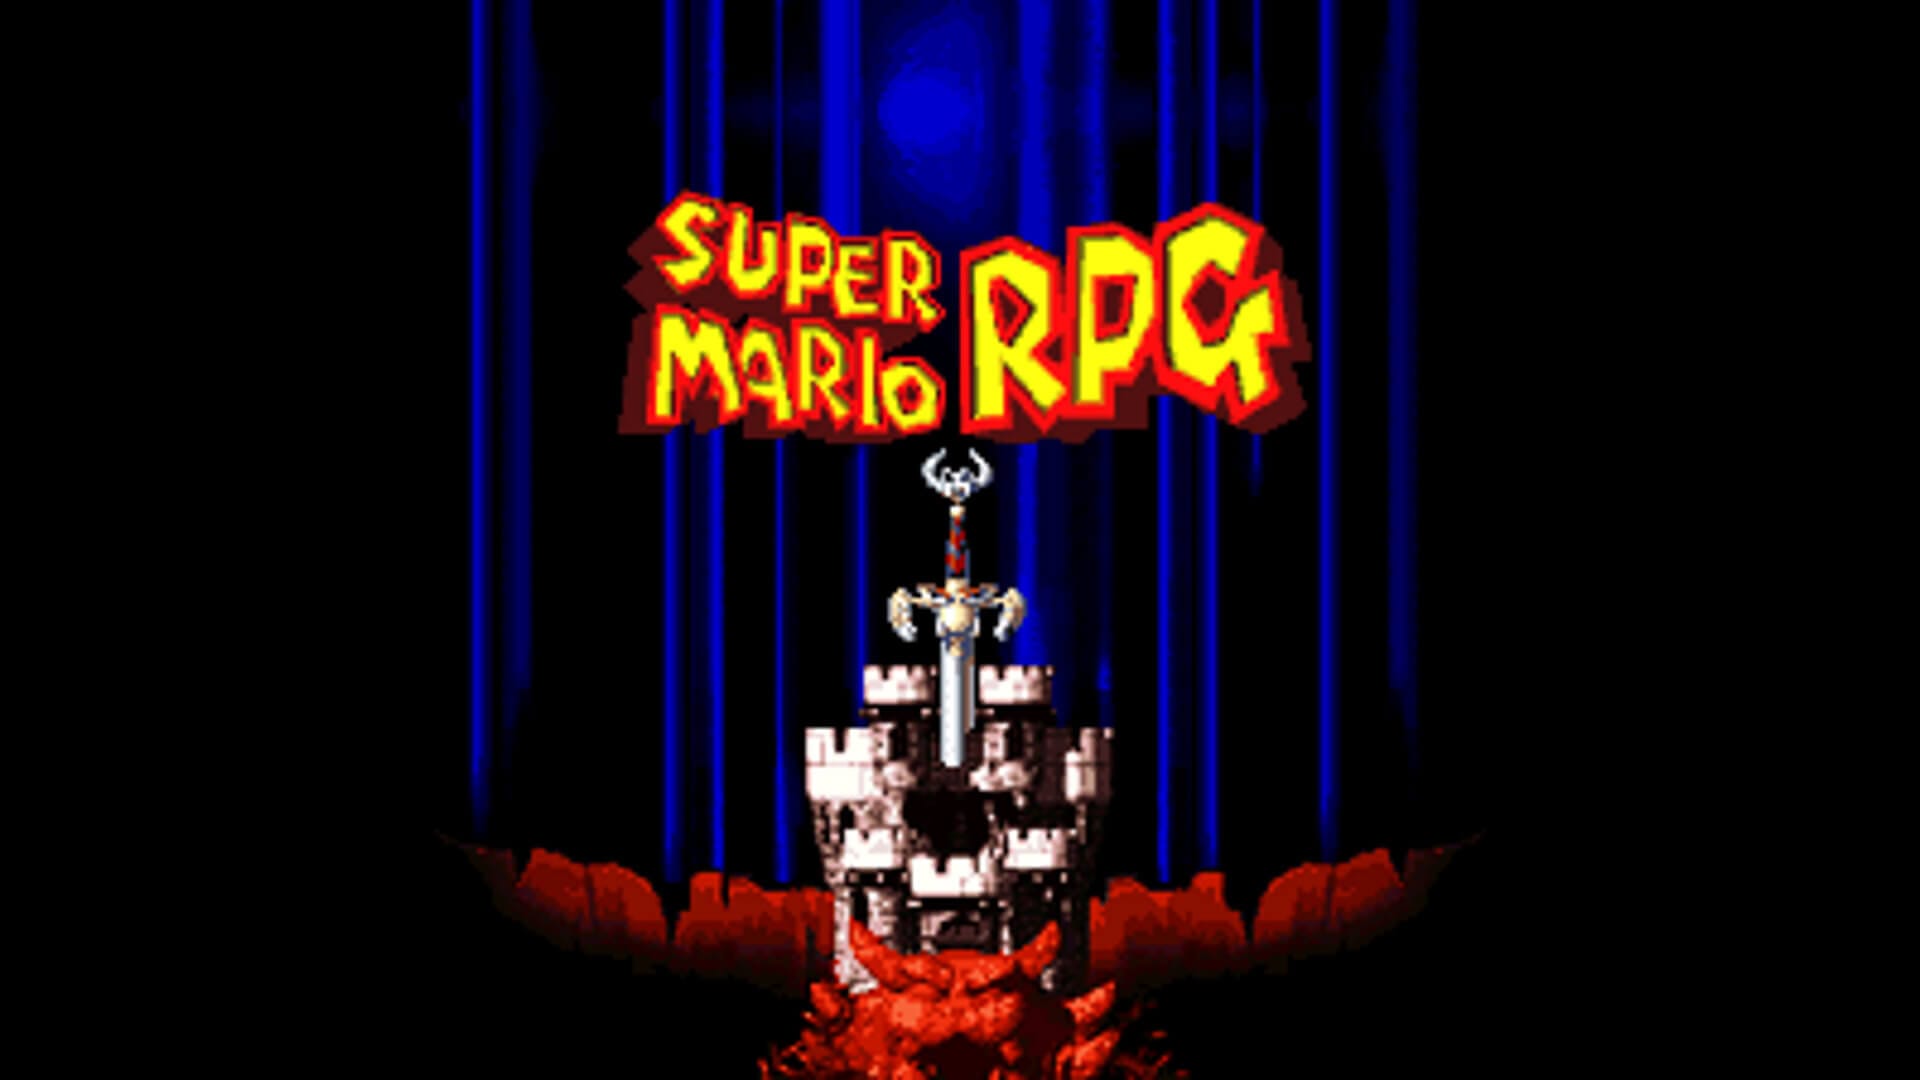 Super Mario RPG: A Localization Retrospective